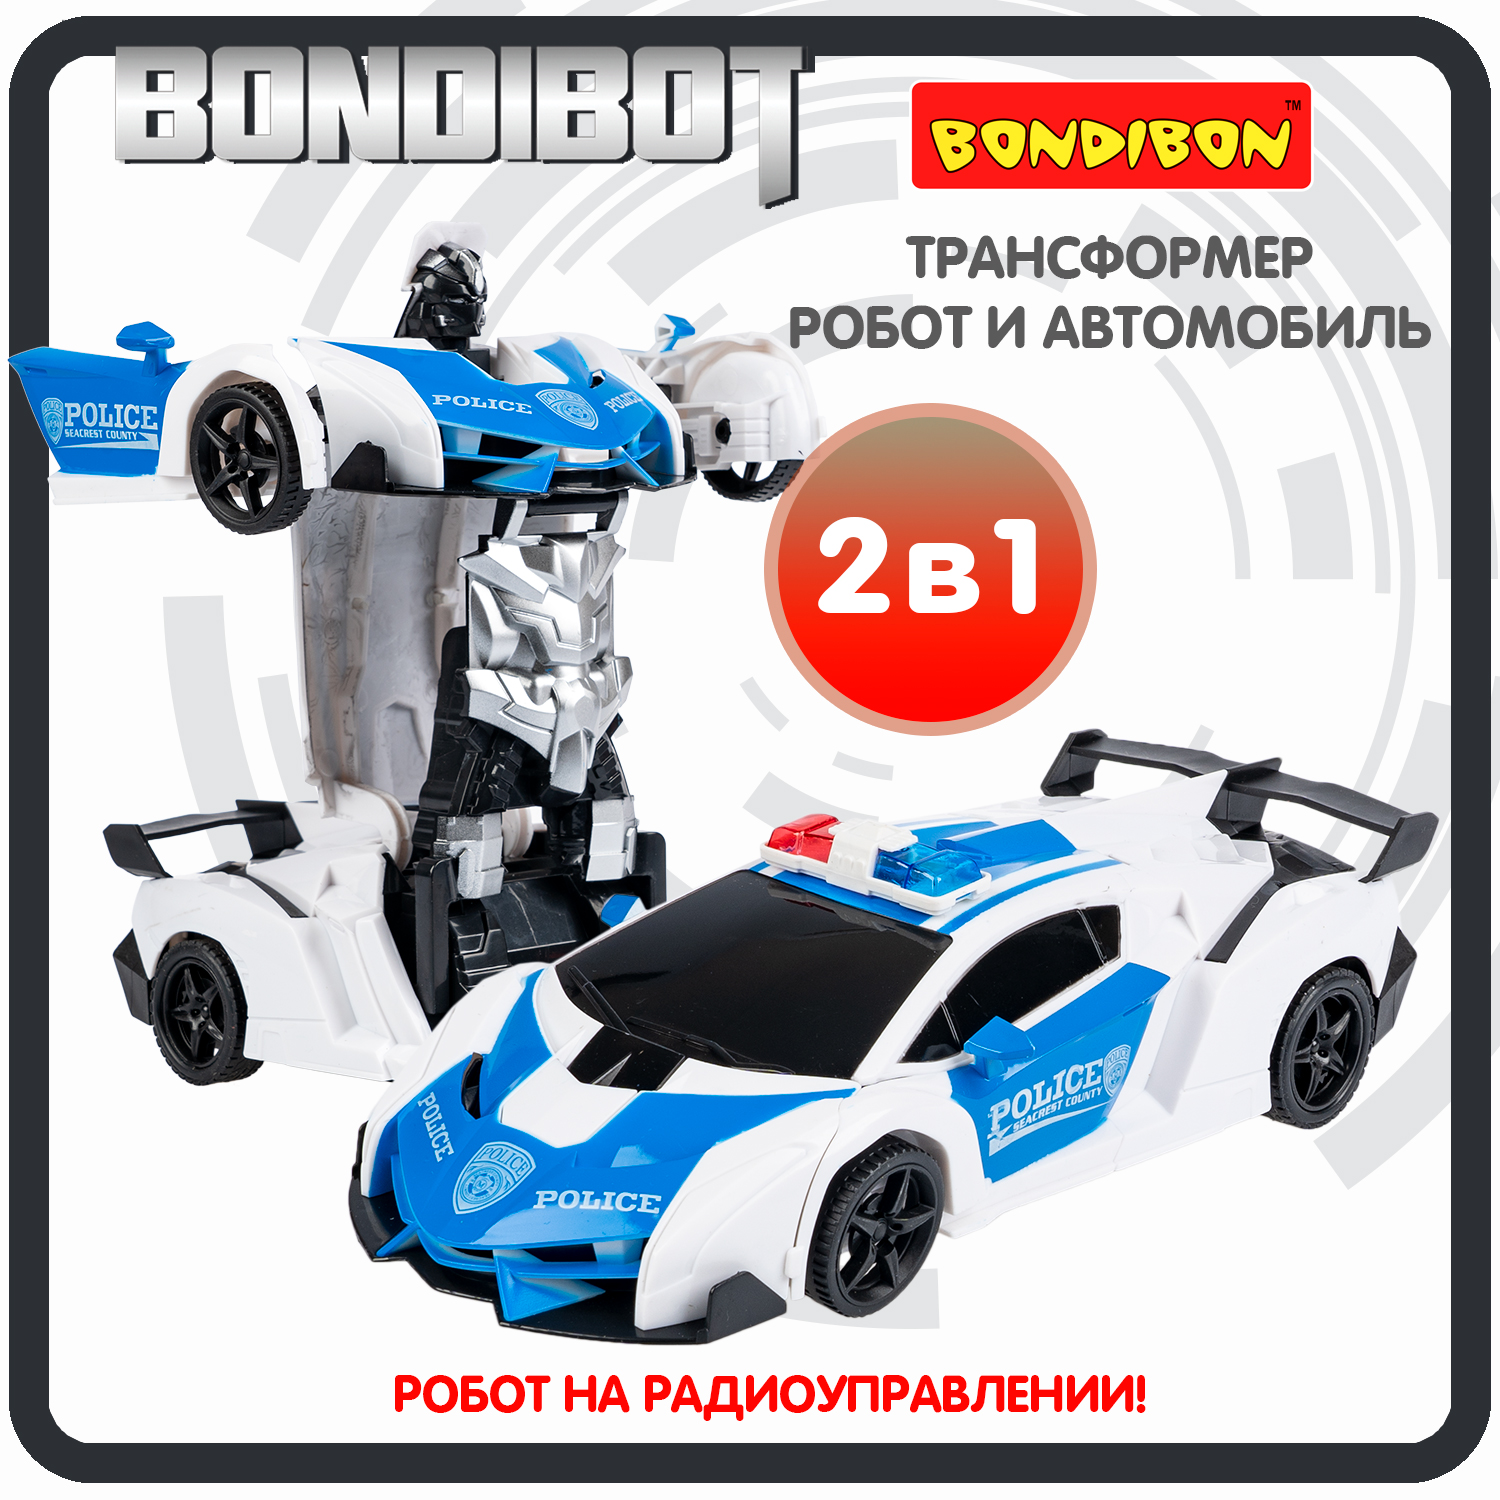 Трансформер 2в1 BONDIBOT на радиоуправлении робот и автомобиль / ВВ6067 трансформер 2в1 bondibot на радиоуправлении робот и автомобиль вв6068